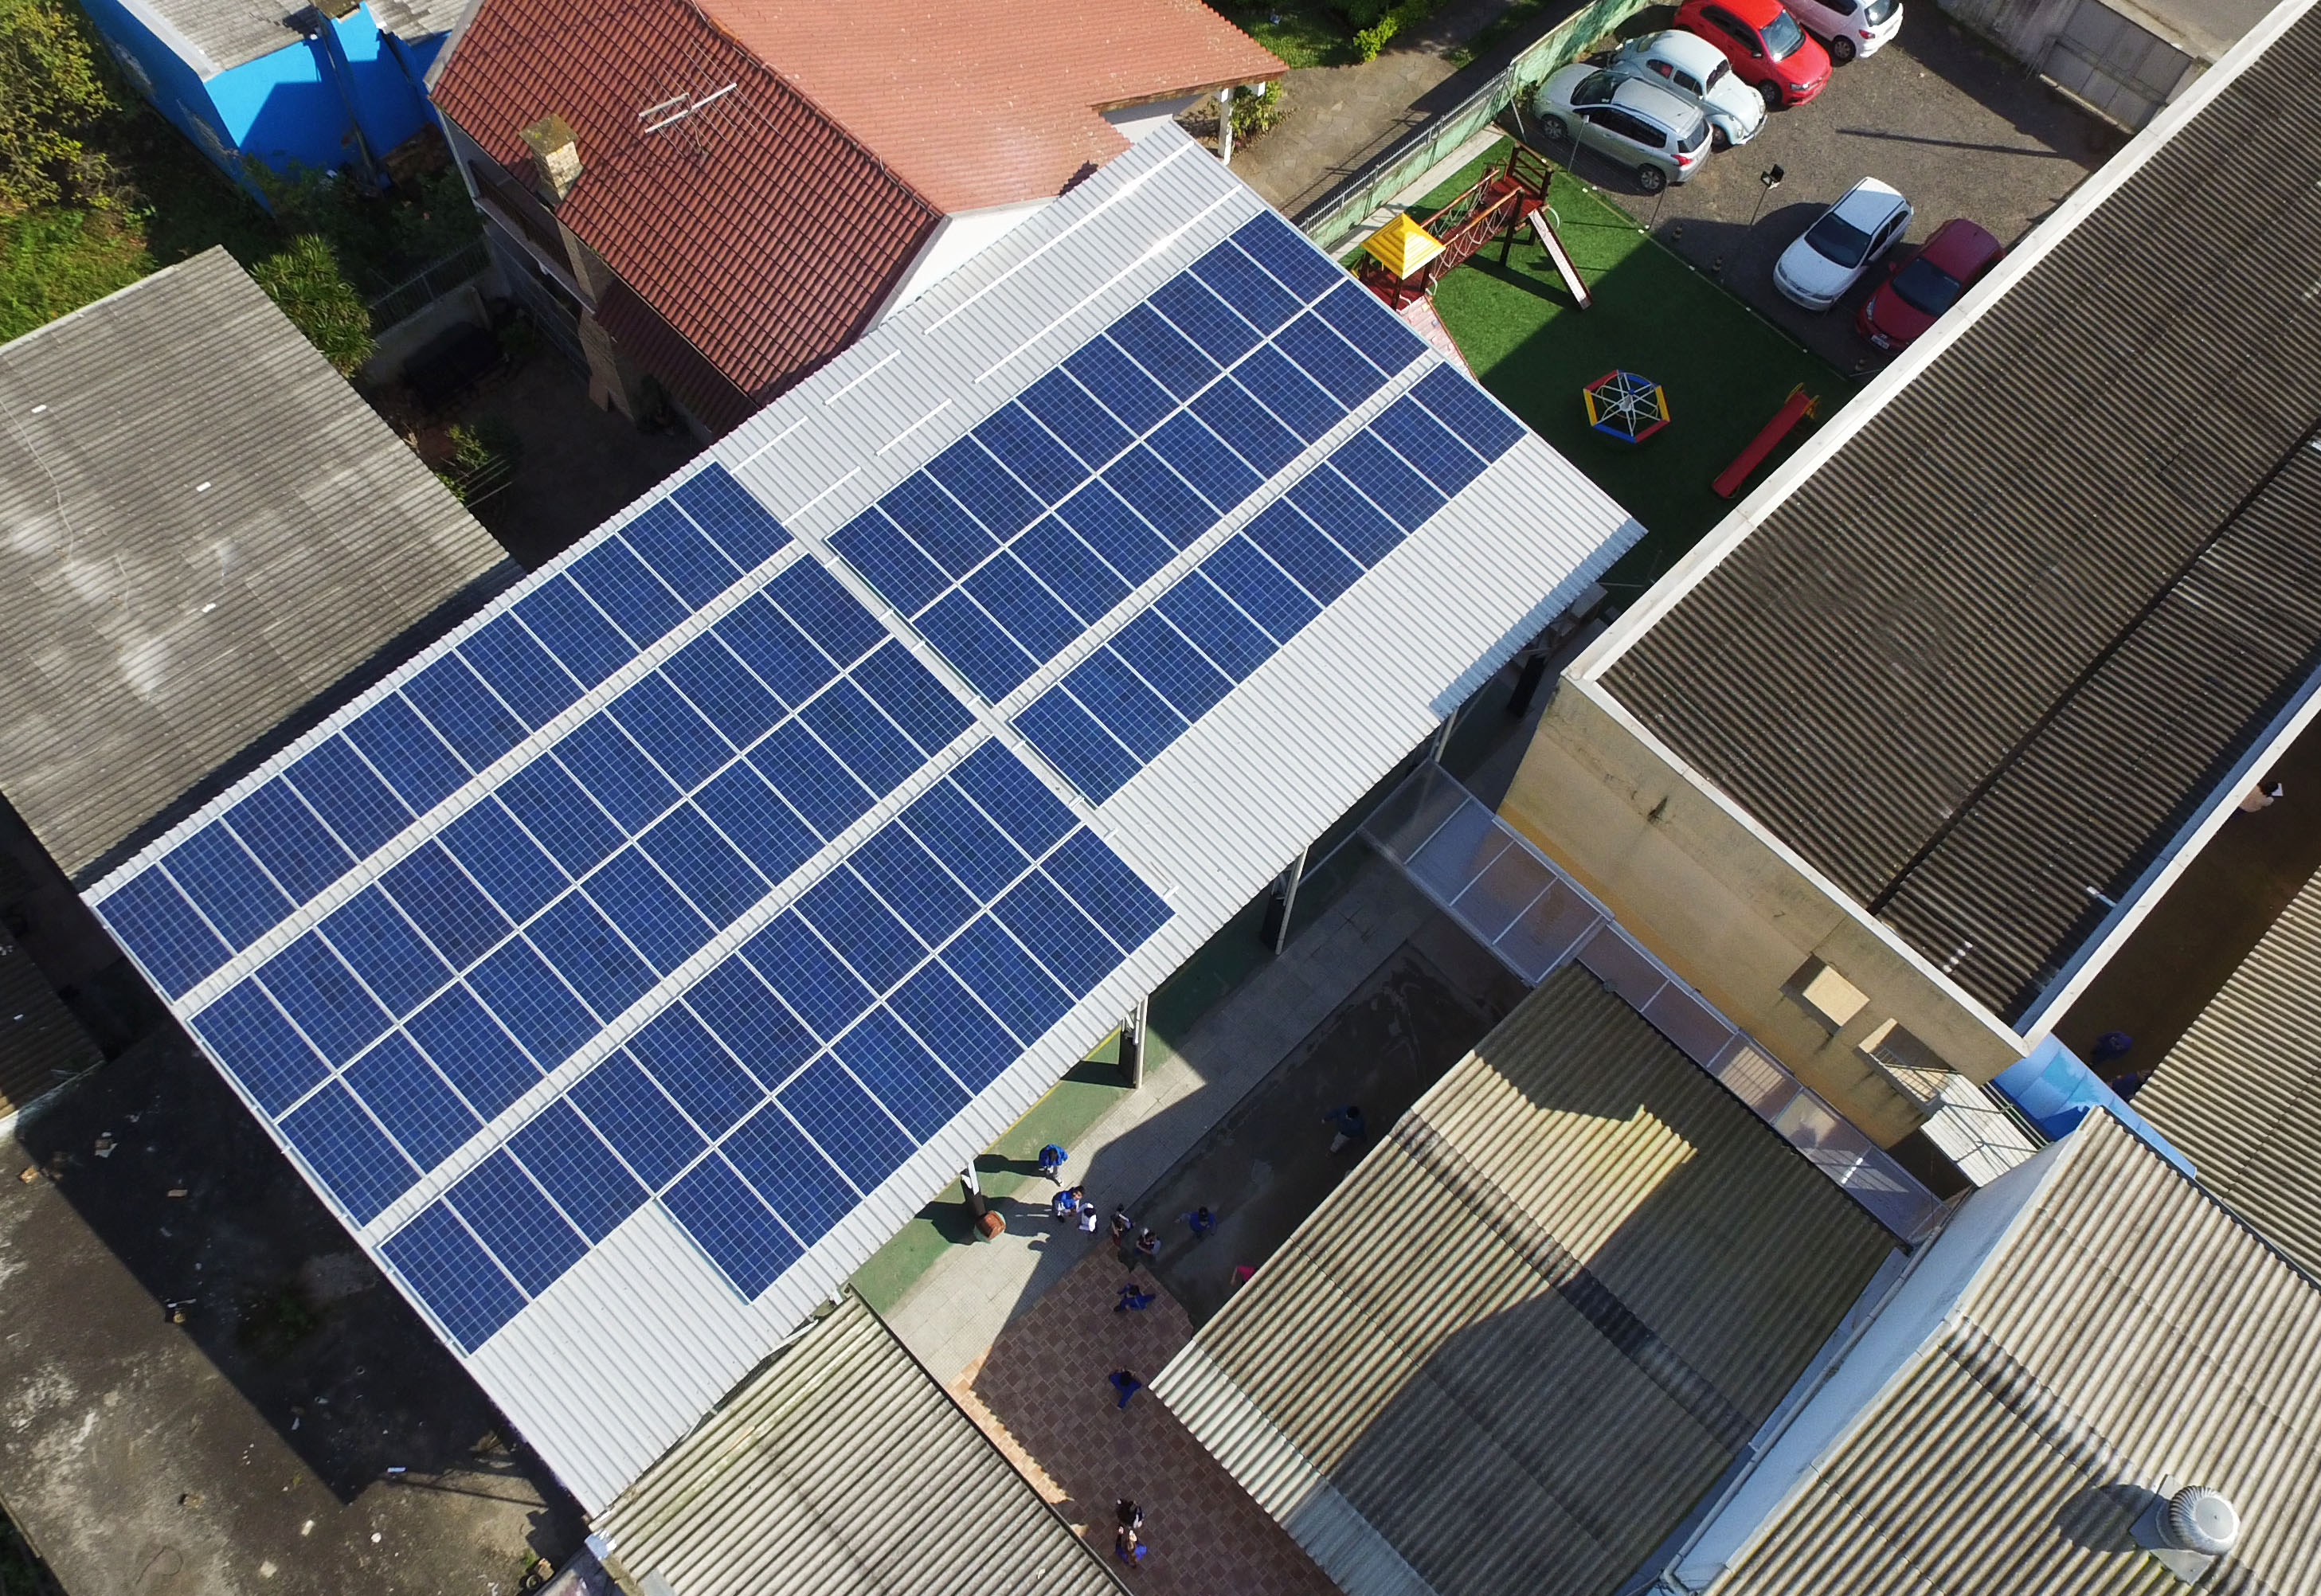 Sistema fotovoltaico em Canoas - Elysia geração distribuída